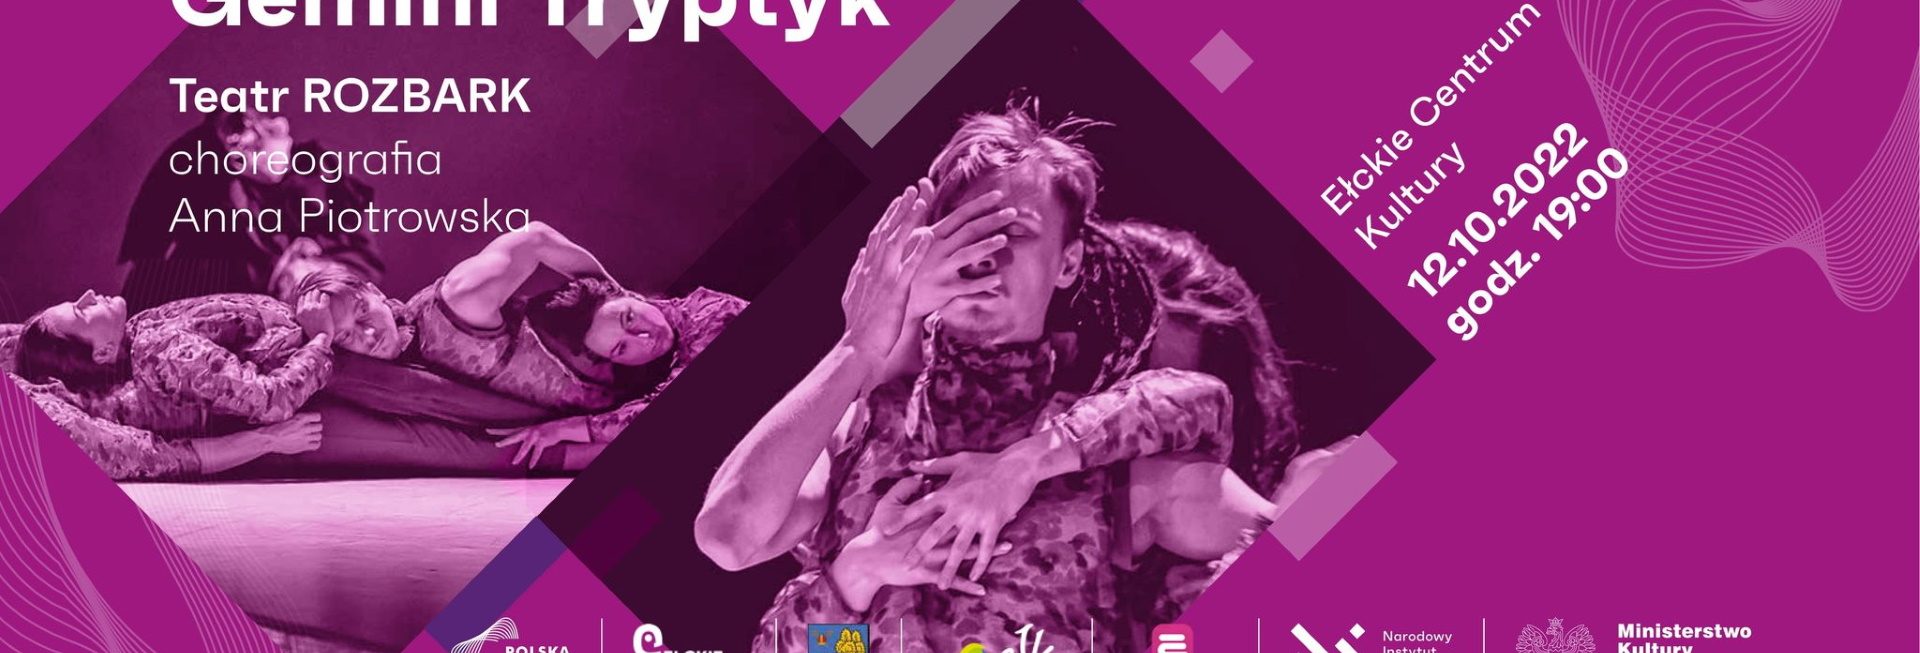 Plakat zapraszający do Ełku na spektakl teatru tańca Gemini Tryptyk - Teatr Rozbark Ełk 2022.